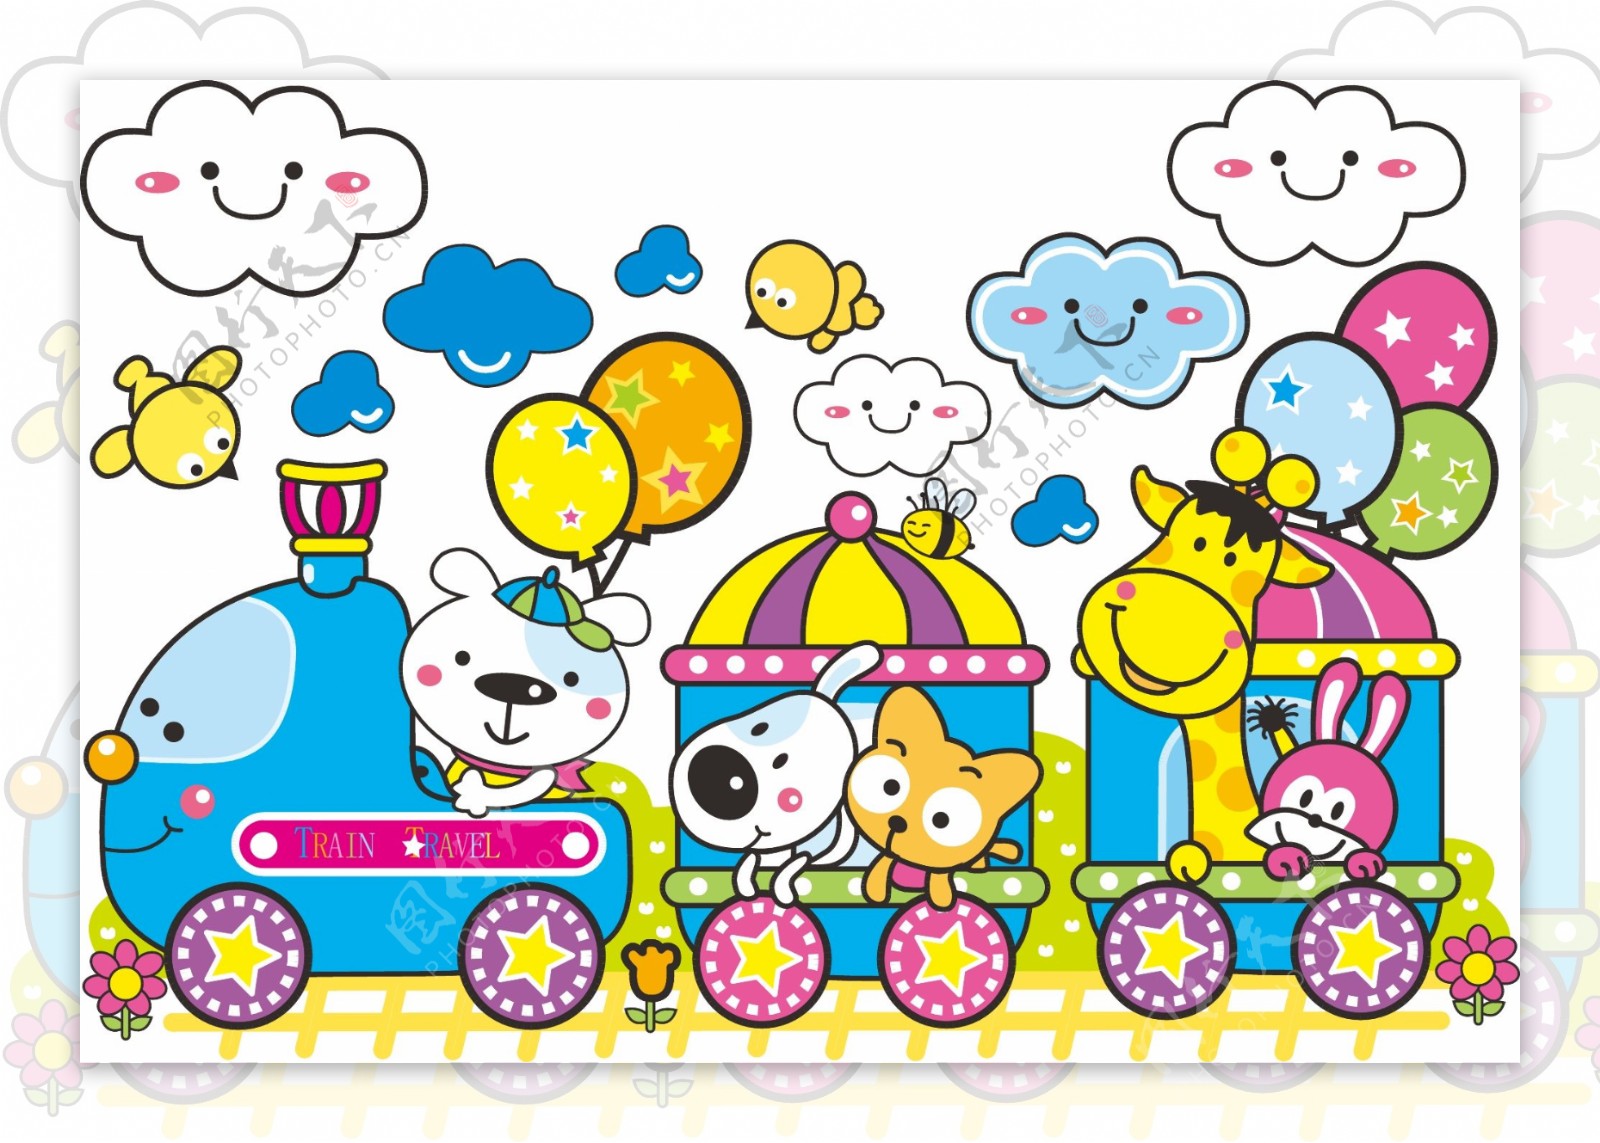 乘火车的小动物插画矢量素材图片